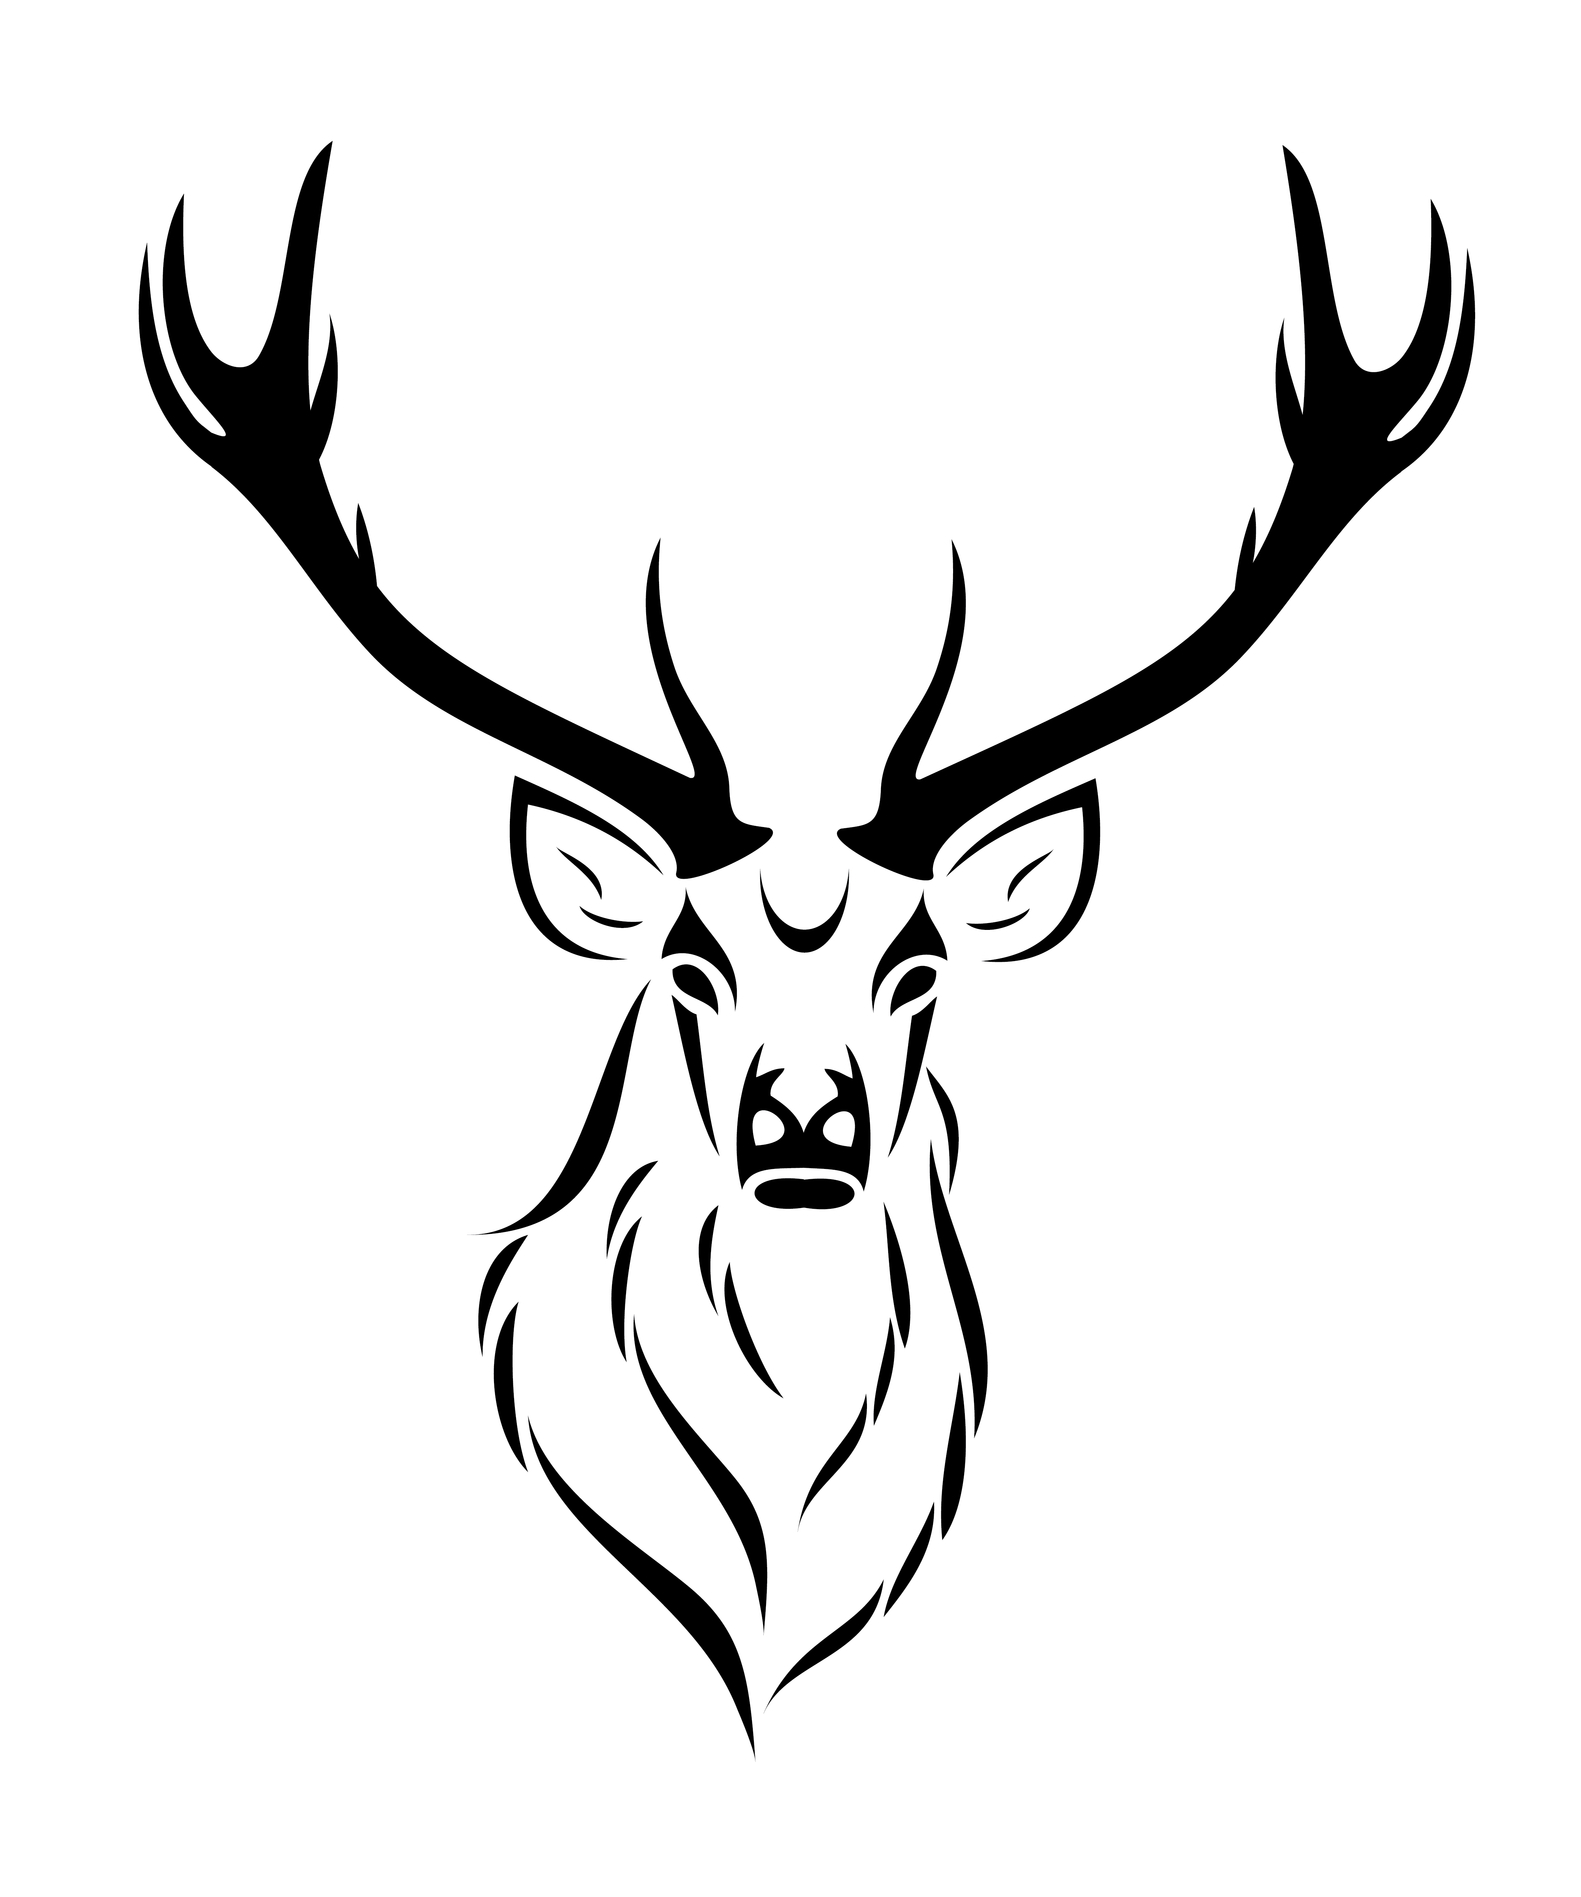 2588 Deer Skull Tattoo Images Stock Photos  Vectors  Shutterstock